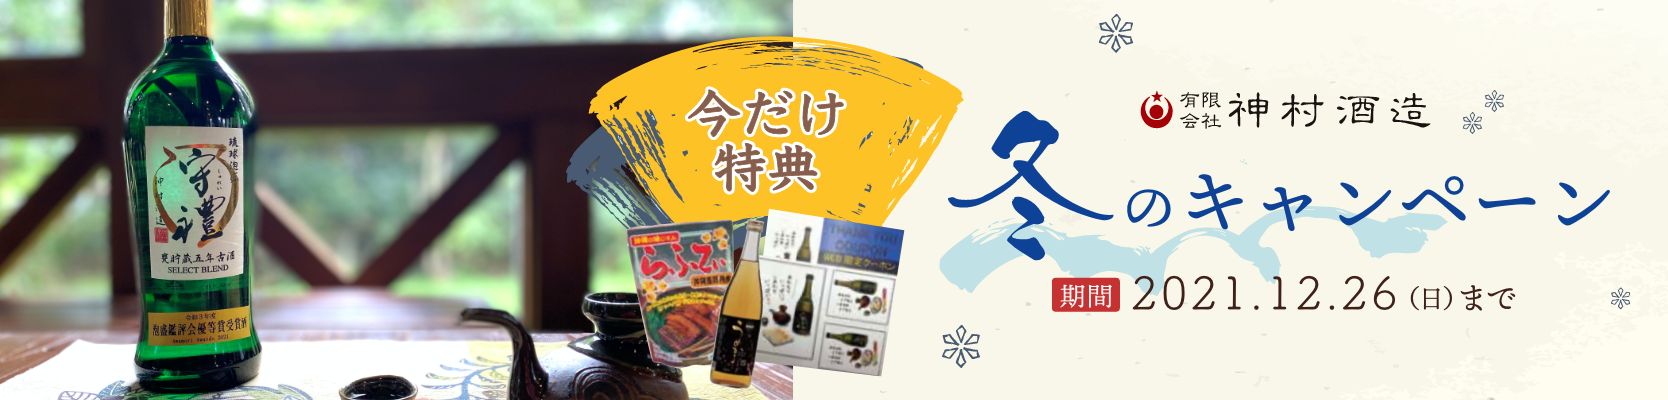 神村酒造冬のキャンペーン